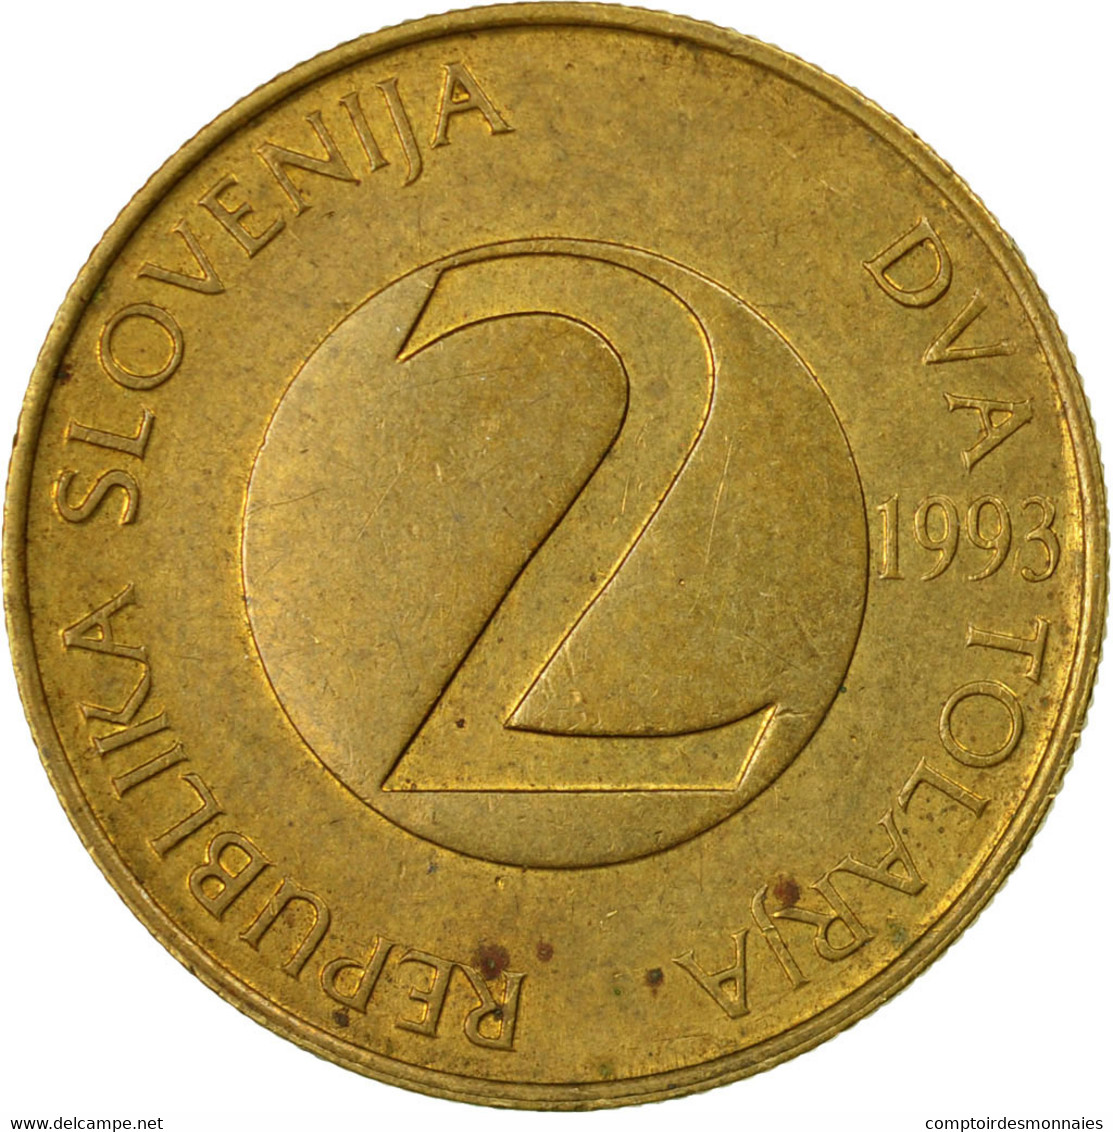 Monnaie, Slovénie, 2 Tolarja, 1993, TB+, Nickel-brass, KM:5 - Slovenia